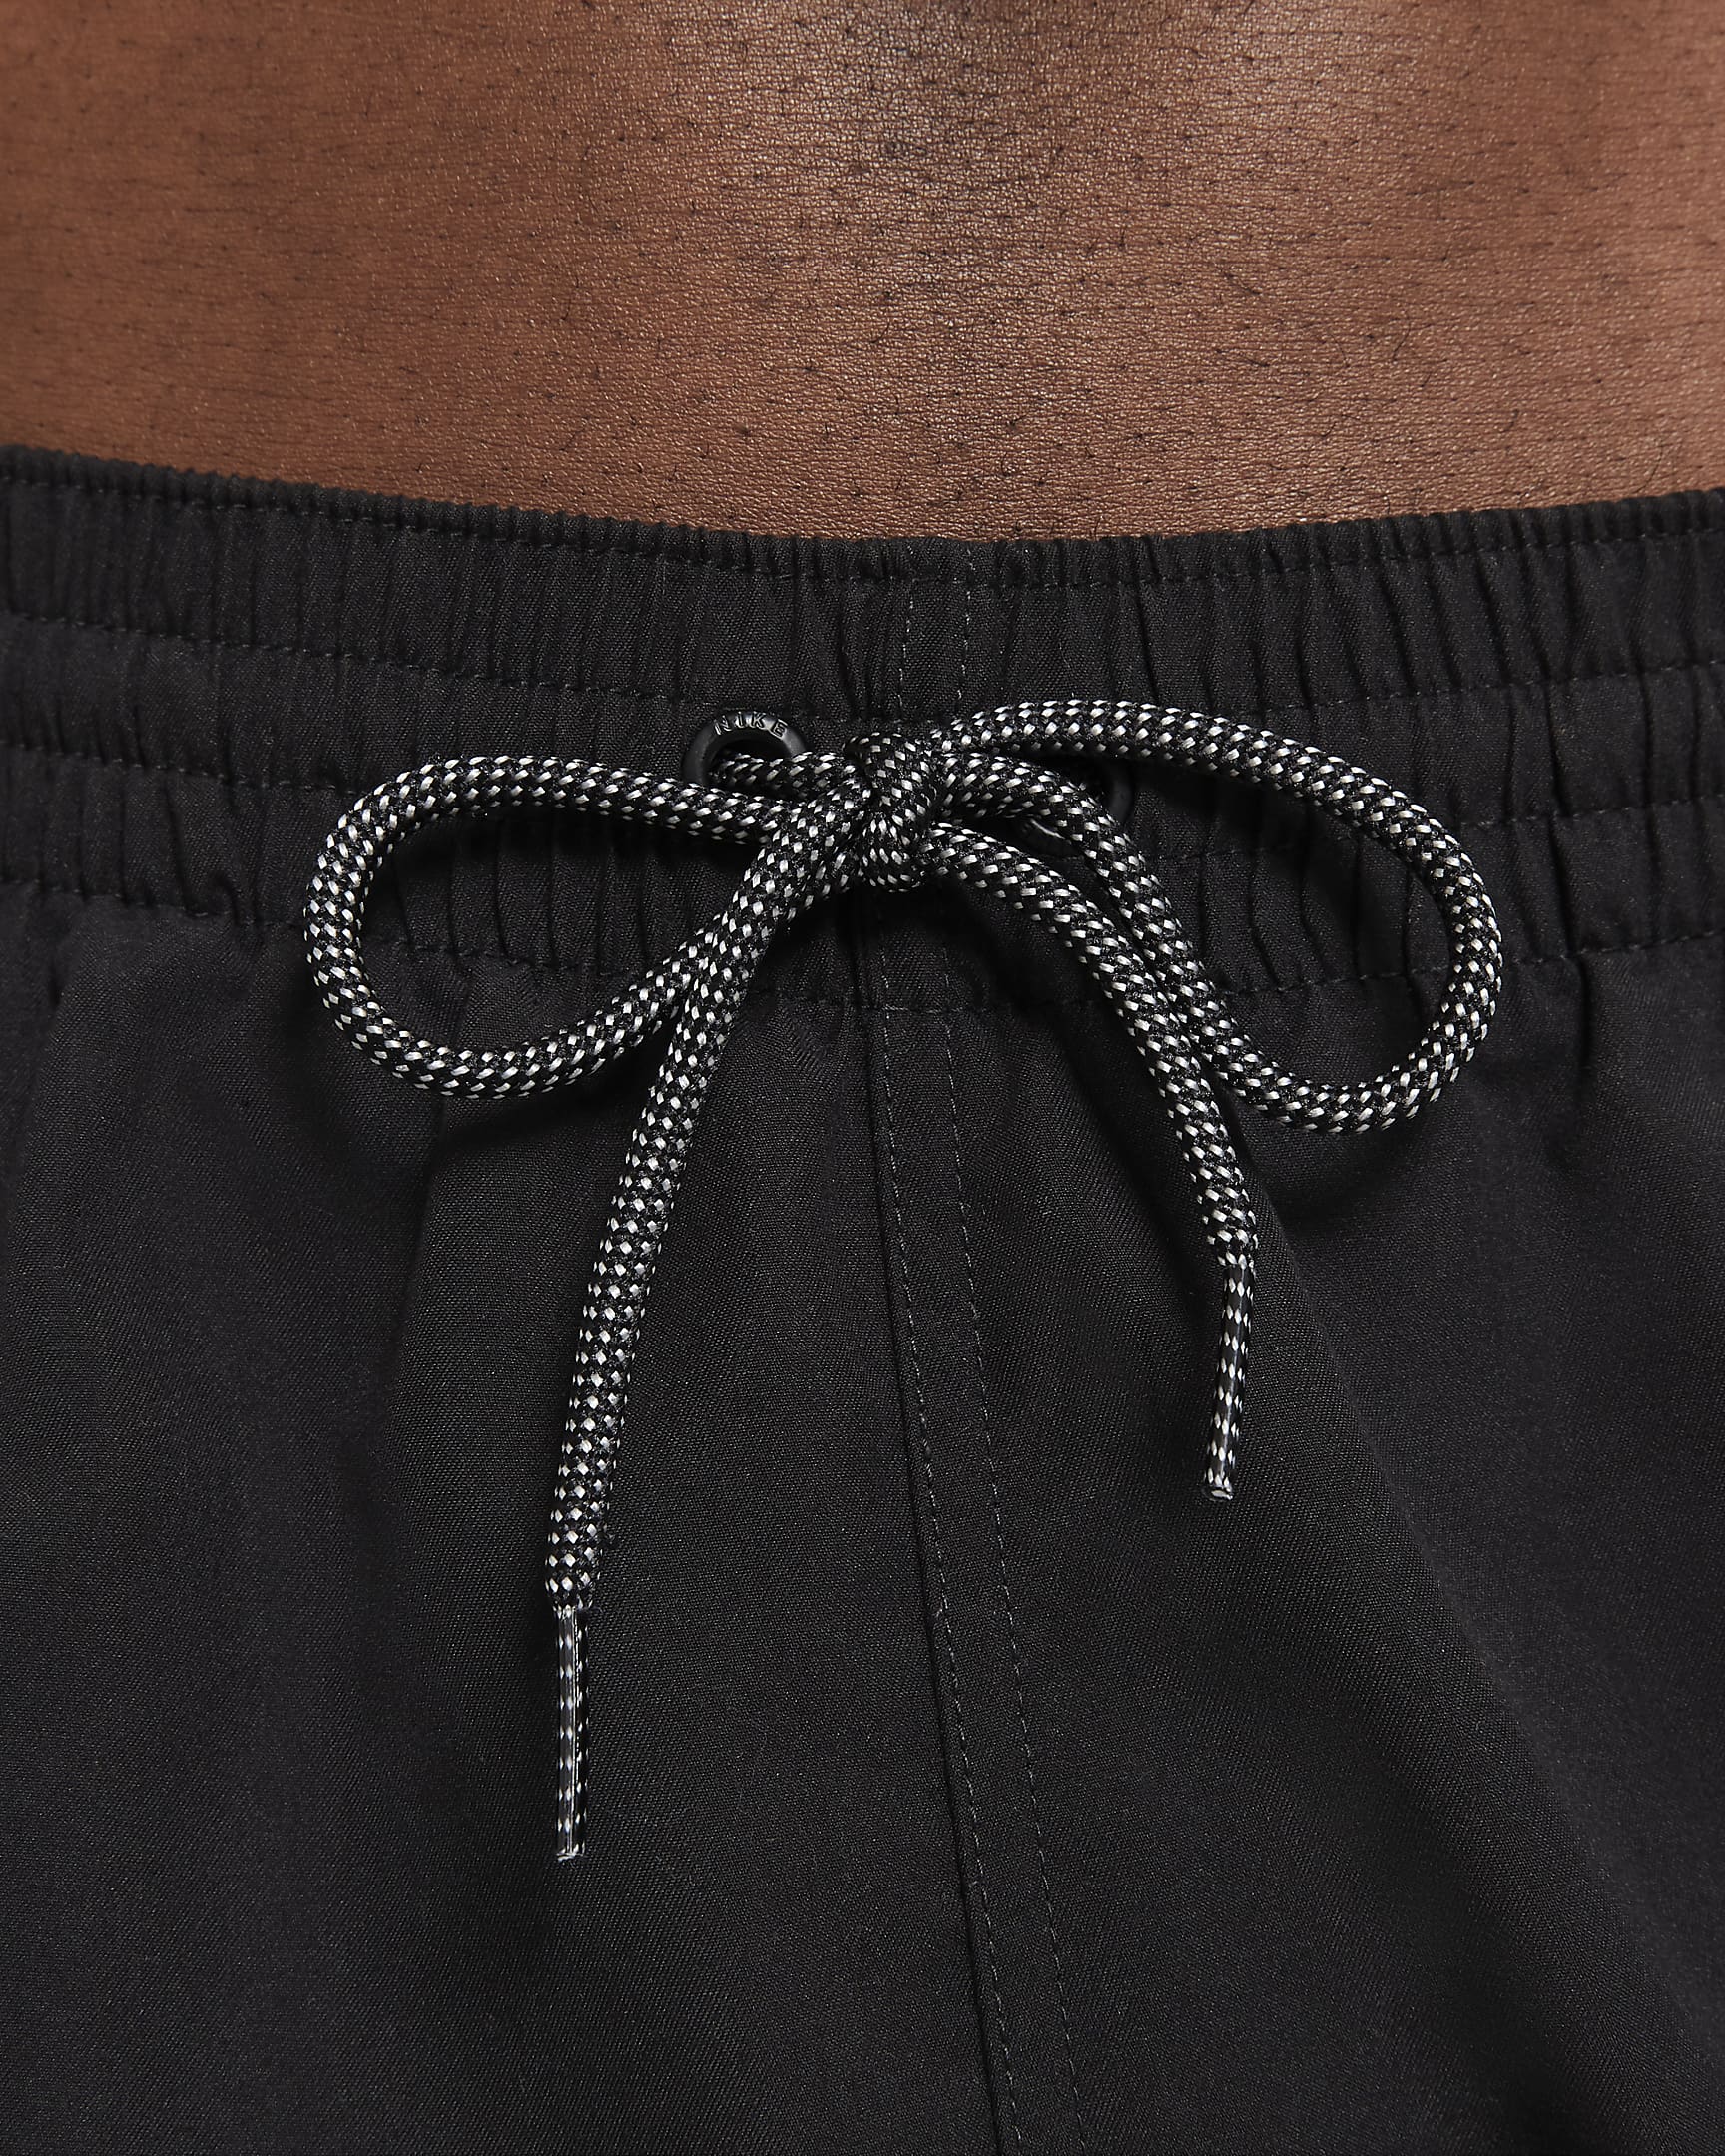 Nike Split-badebukser (13 cm) til mænd - sort/Iron Grey/hvid